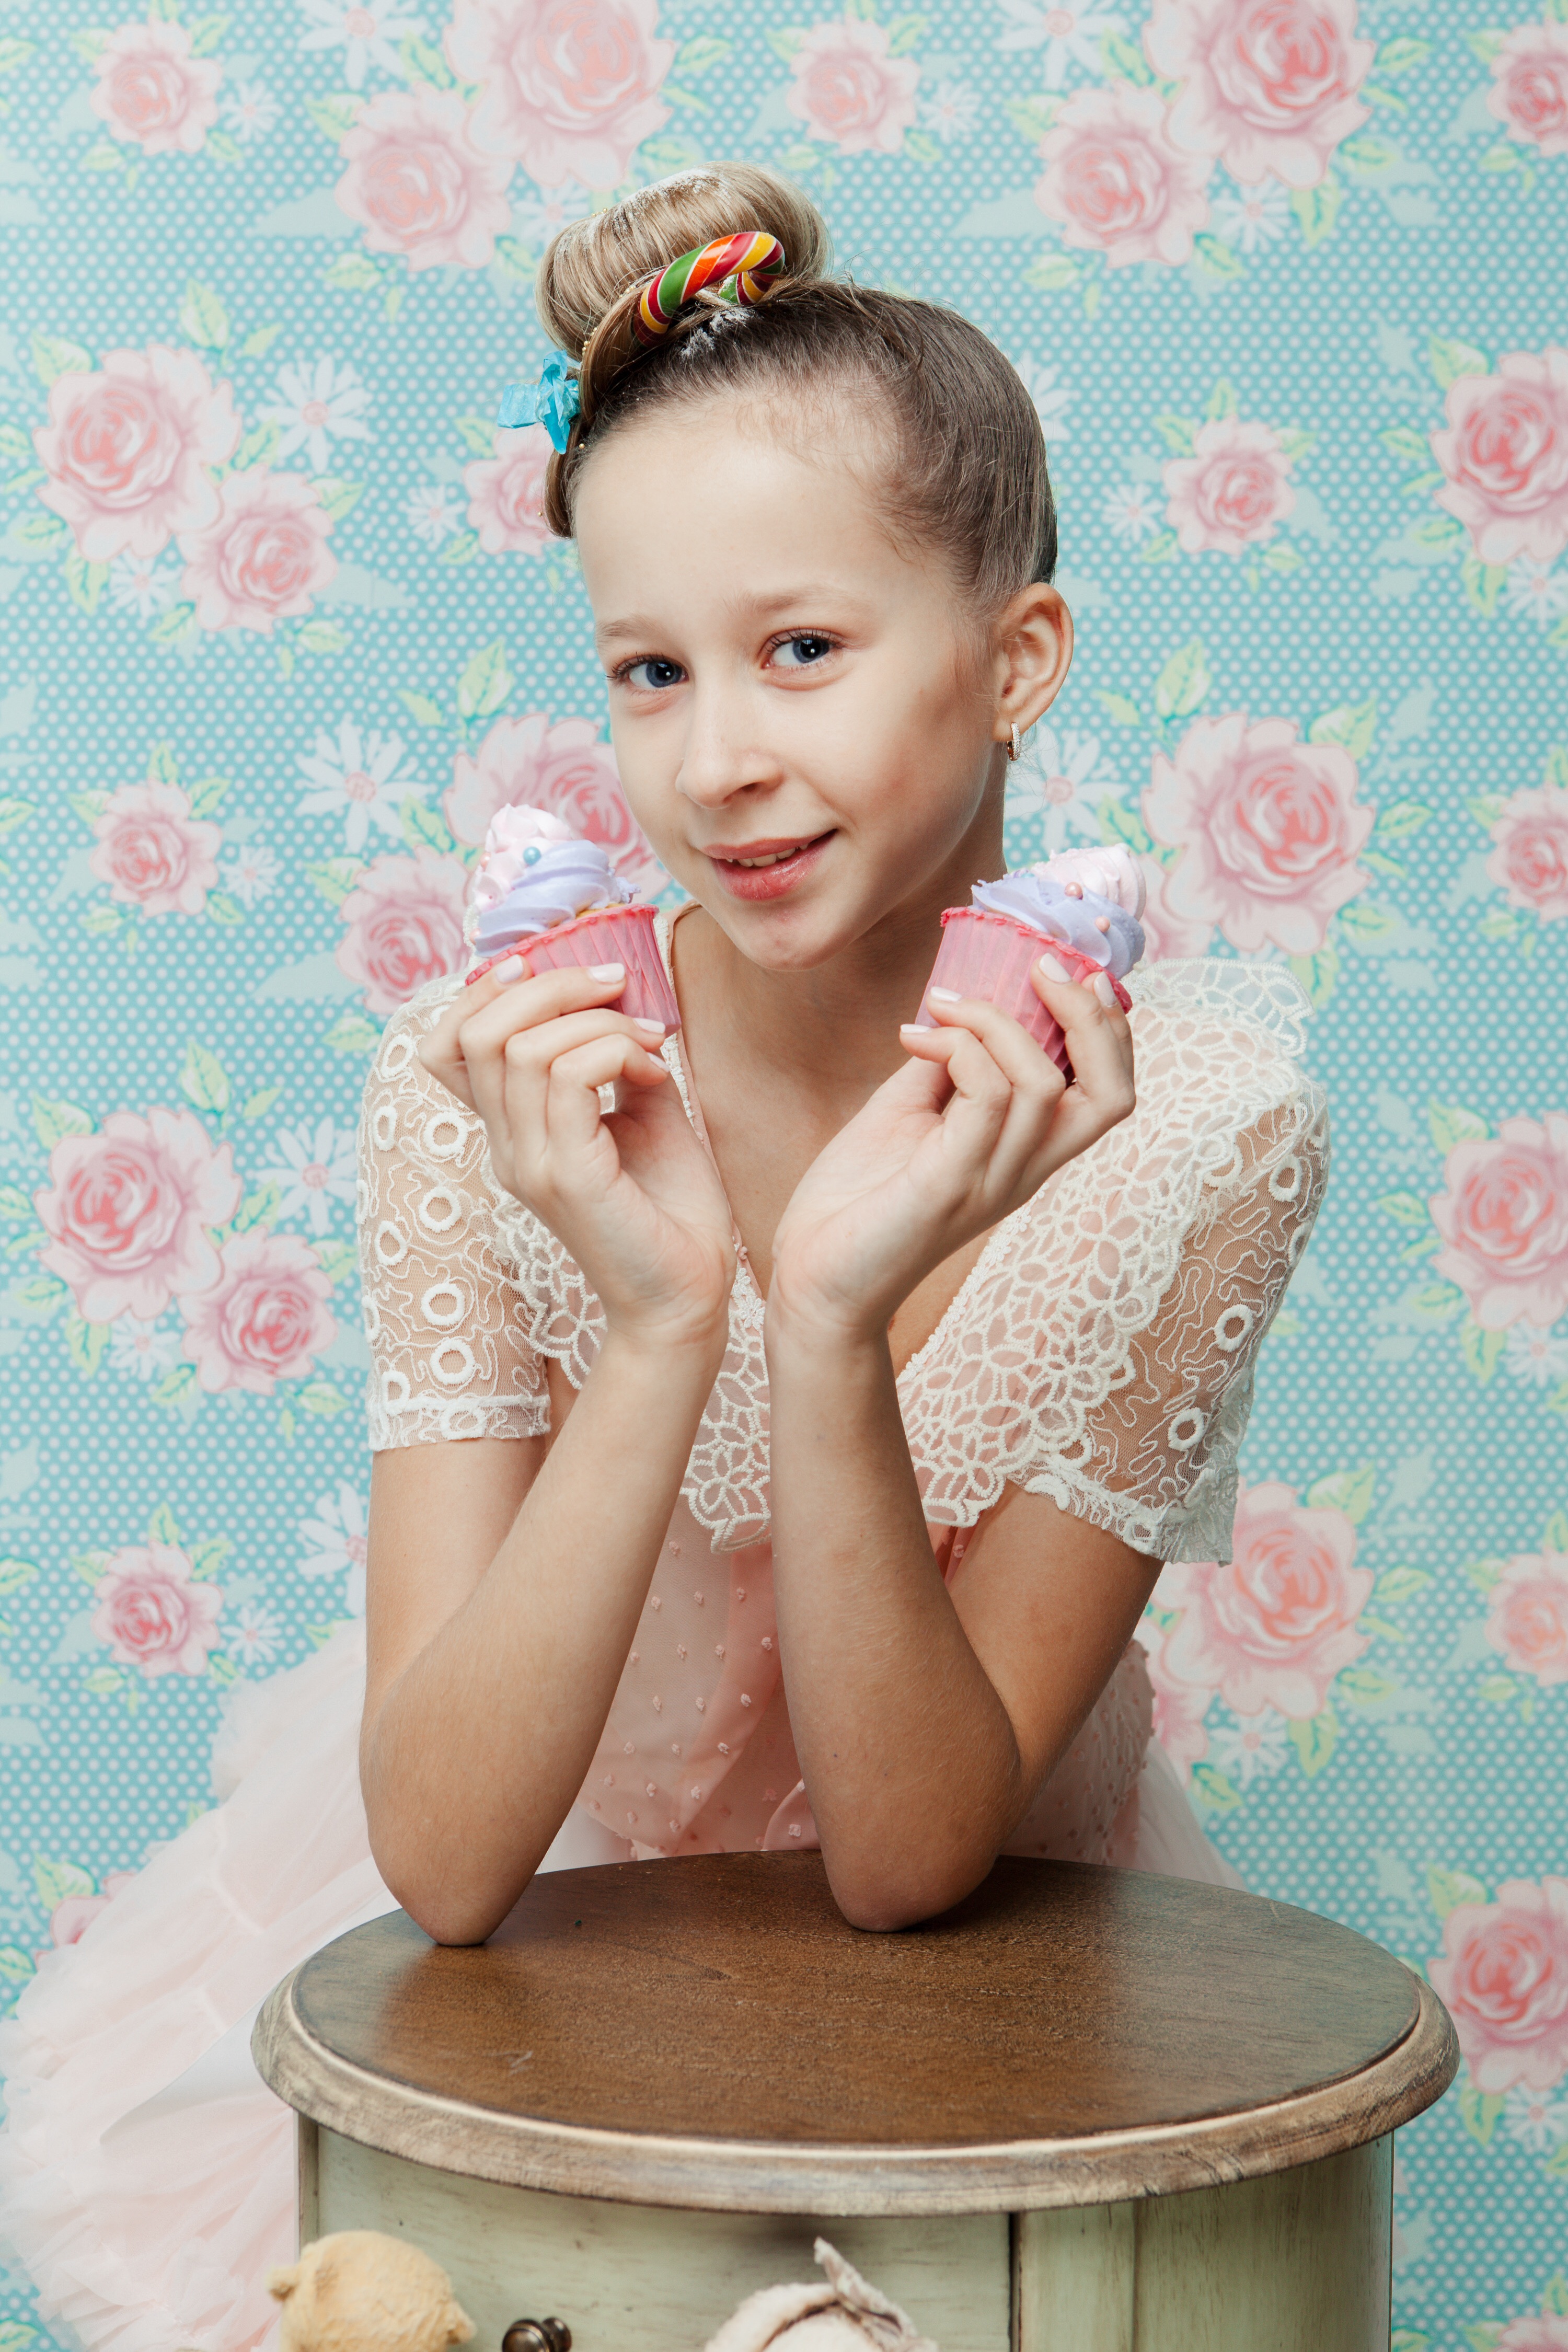 Валерия Антипова - аккредитованная модель для участия в подиумных показах на Междунродной Детской Неделе моды